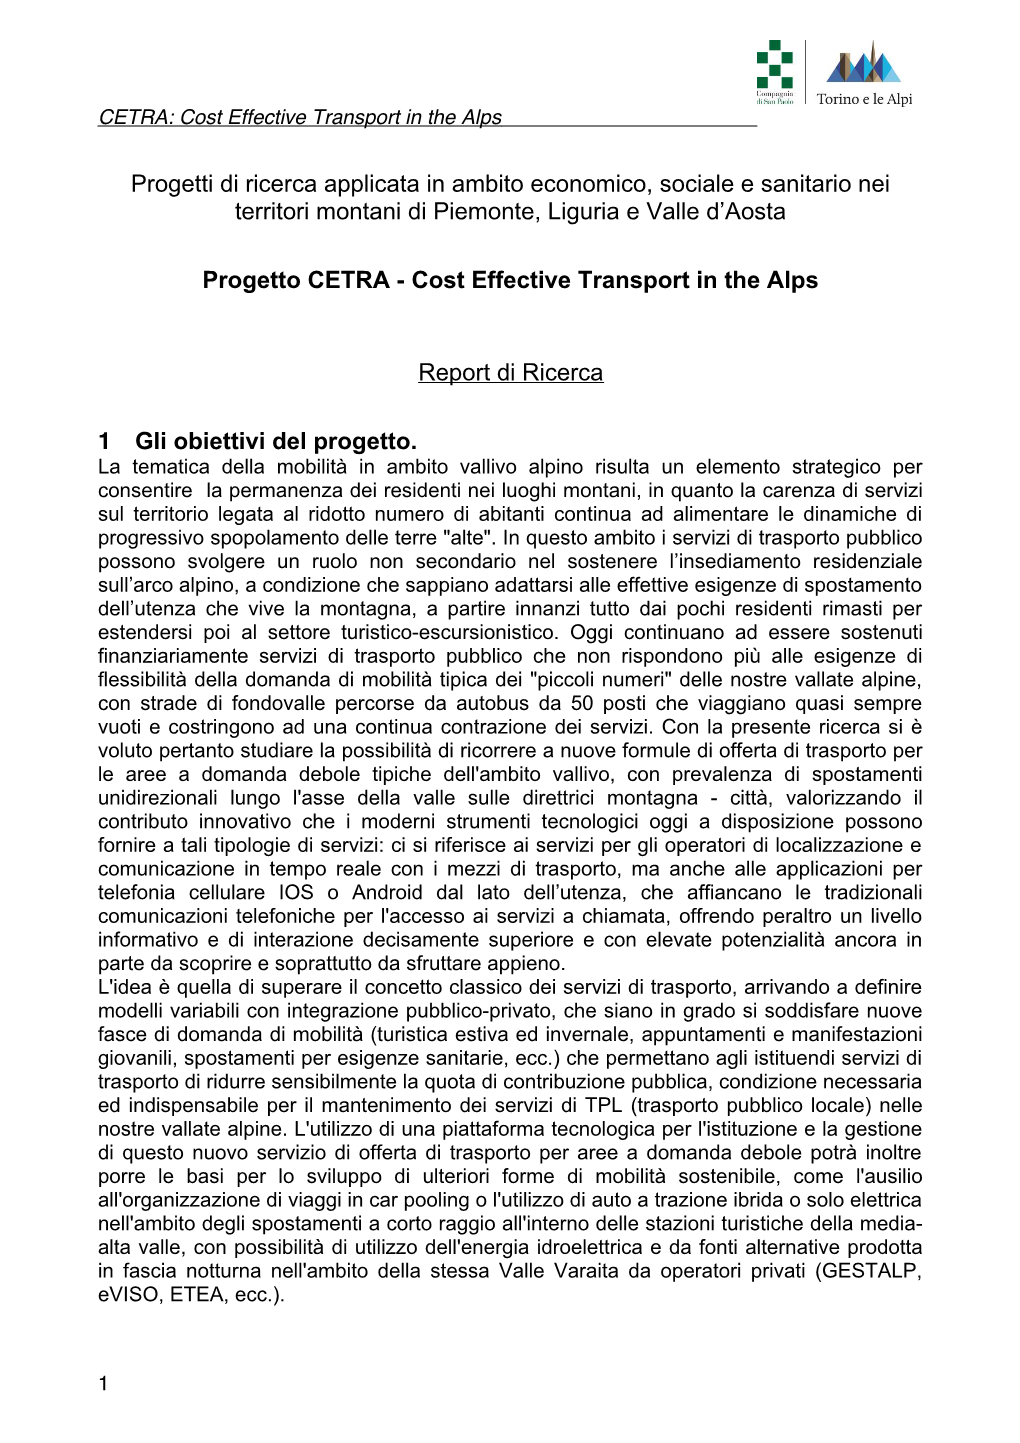 Progetti Di Ricerca Applicata in Ambito Economico, Sociale E Sanitario Nei Territori Montani Di Piemonte, Liguria E Valle D’Aosta